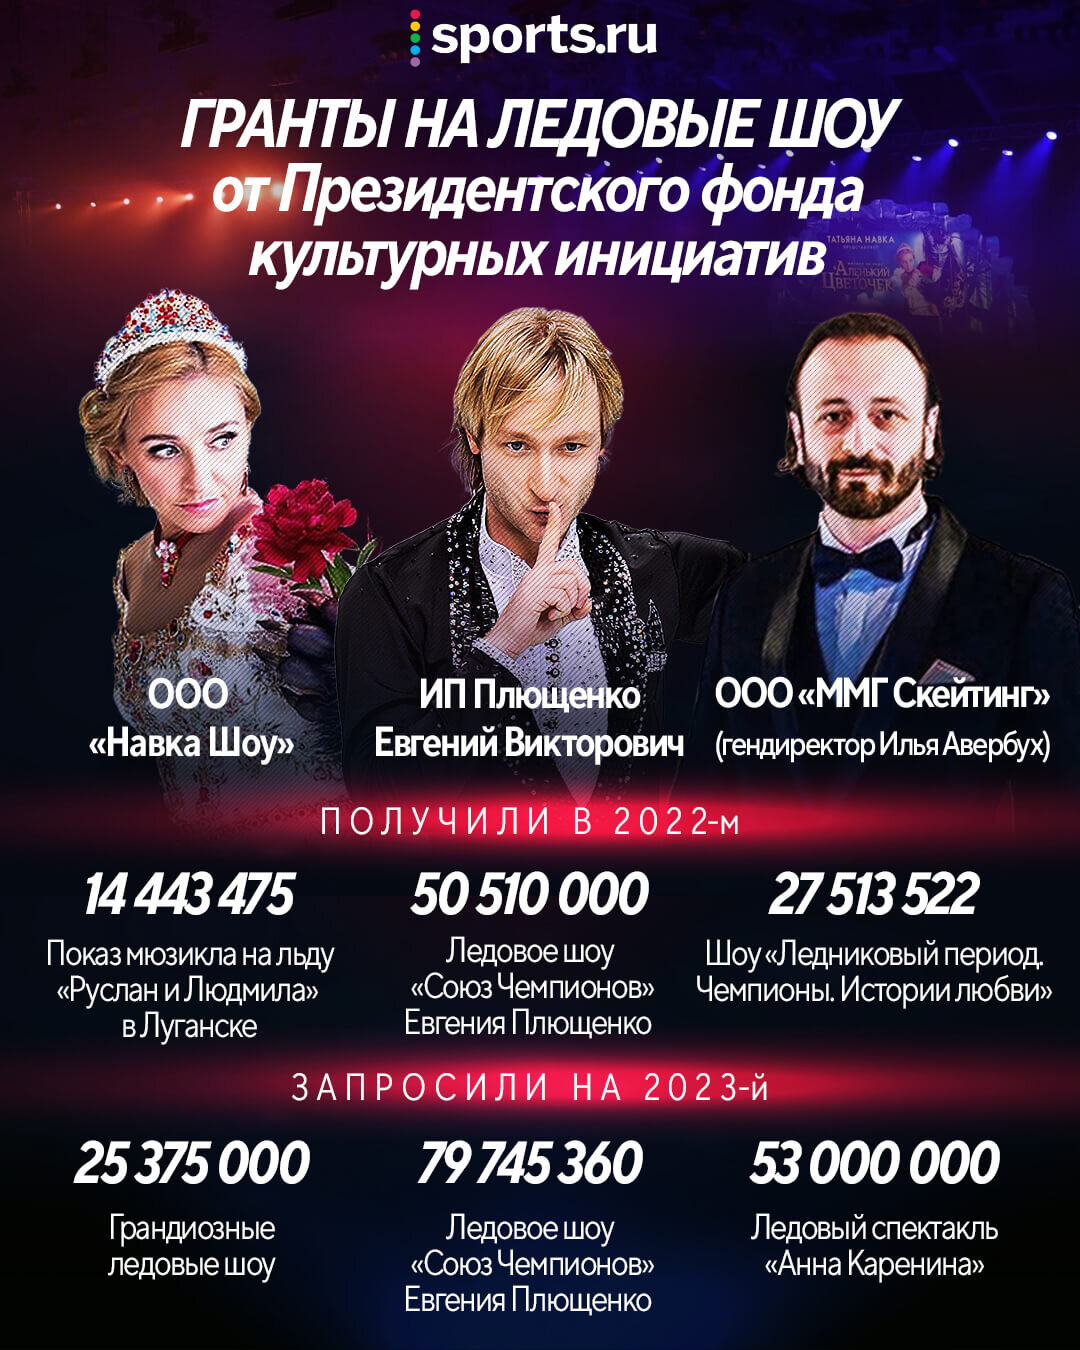 Компания Татьяны Навки выиграла грант 25 млн рублей на проведение ледовых шоу